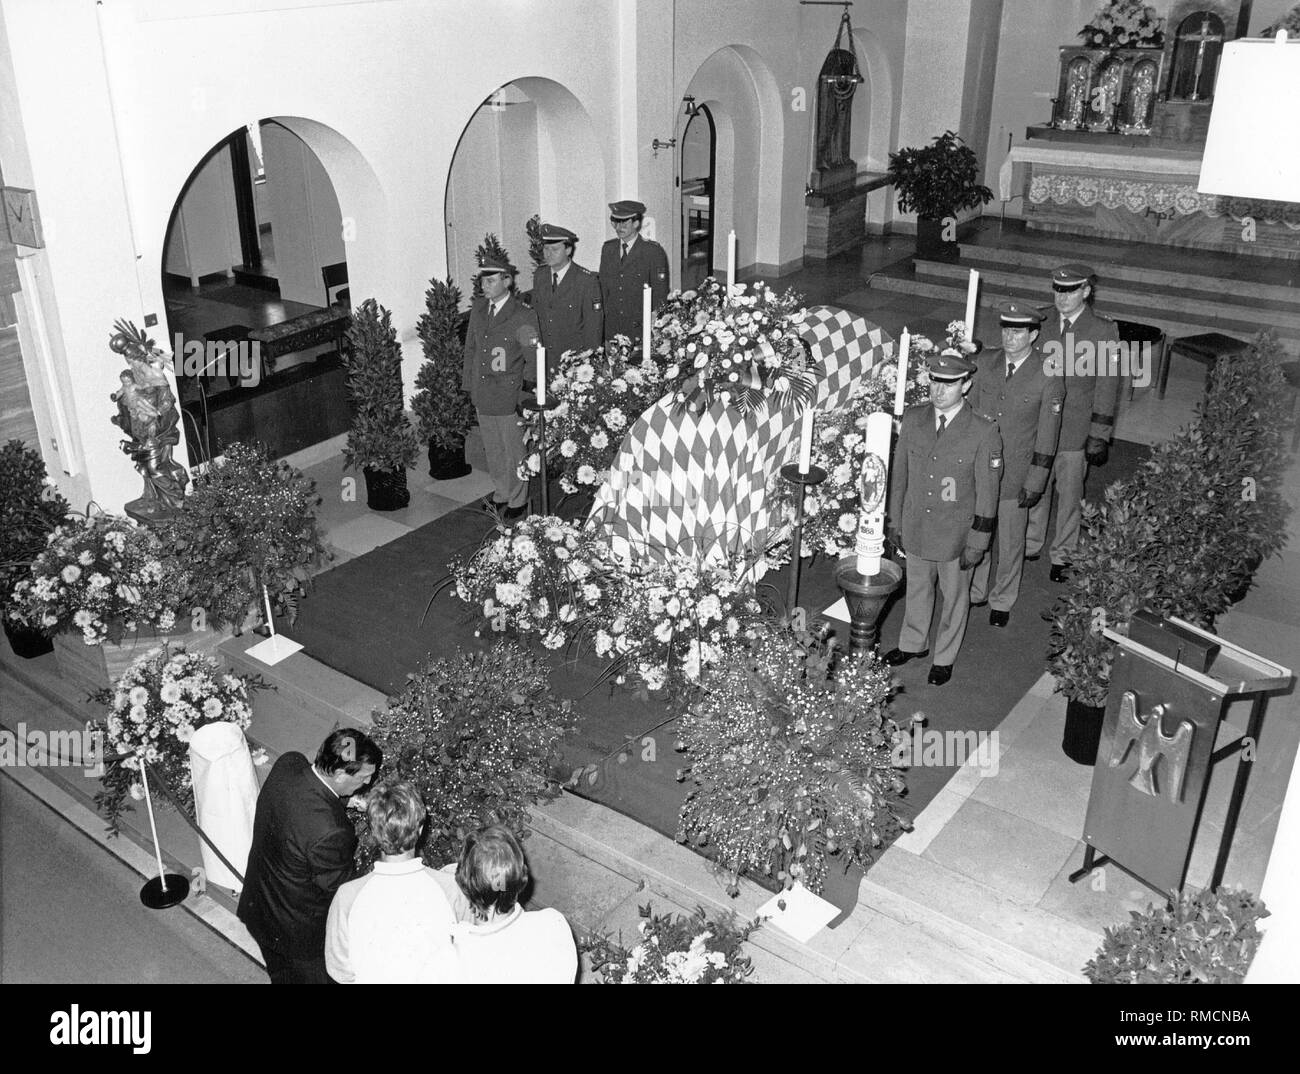 Der Sarg des Verstorbenen bayerischen Ministerpräsidenten Franz Josef Strauss ist in einer Kirche in Rott am Inn. Strauss war im Gewölbe des Zwicknagl Familie, wo auch seine Frau Marianne begraben ist, der vier Jahre zuvor gestorben begraben. Später wurden sie in einem Grab der Ehre auf dem Münchner Waldfriedhof bestattet. Stockfoto